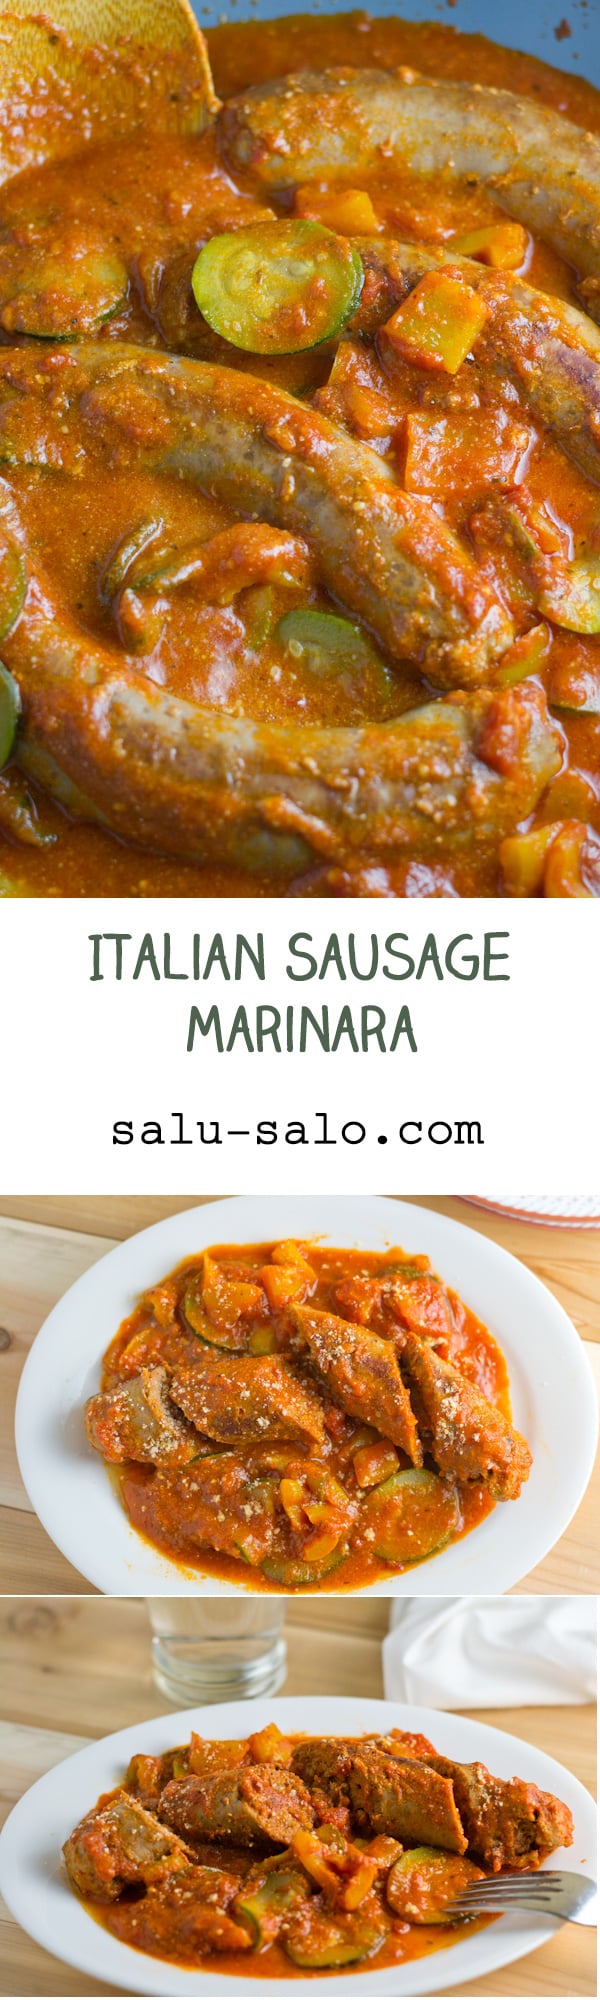 Italian Sausage Marinara